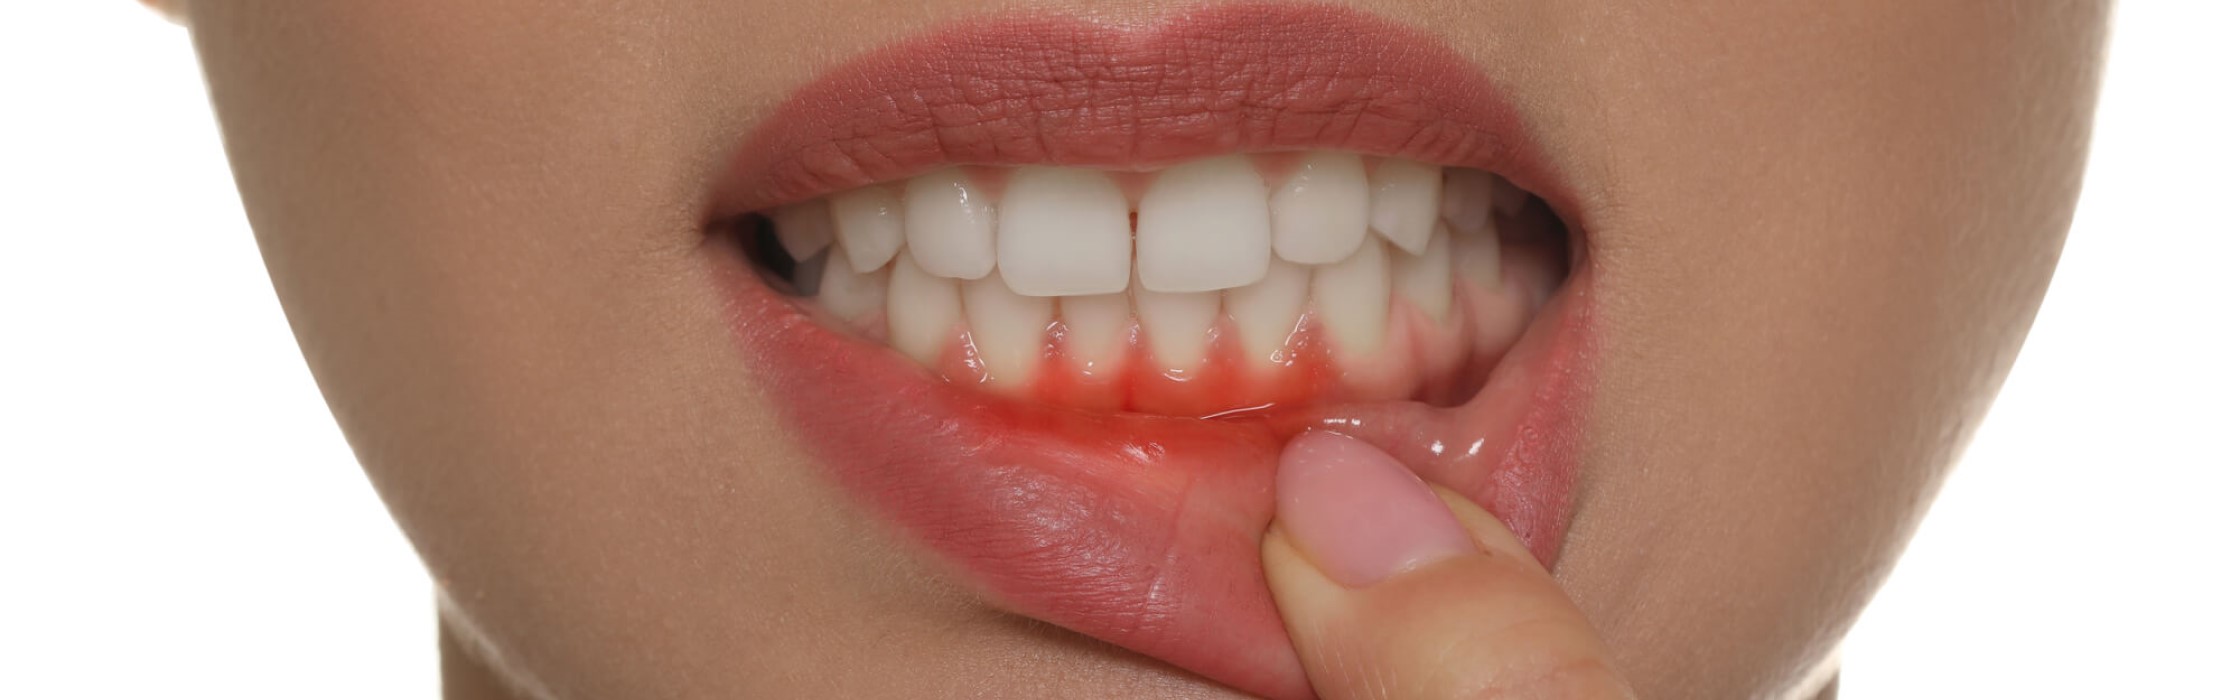 Zahnfleischtaschen: Anzeichen für Parodontitis